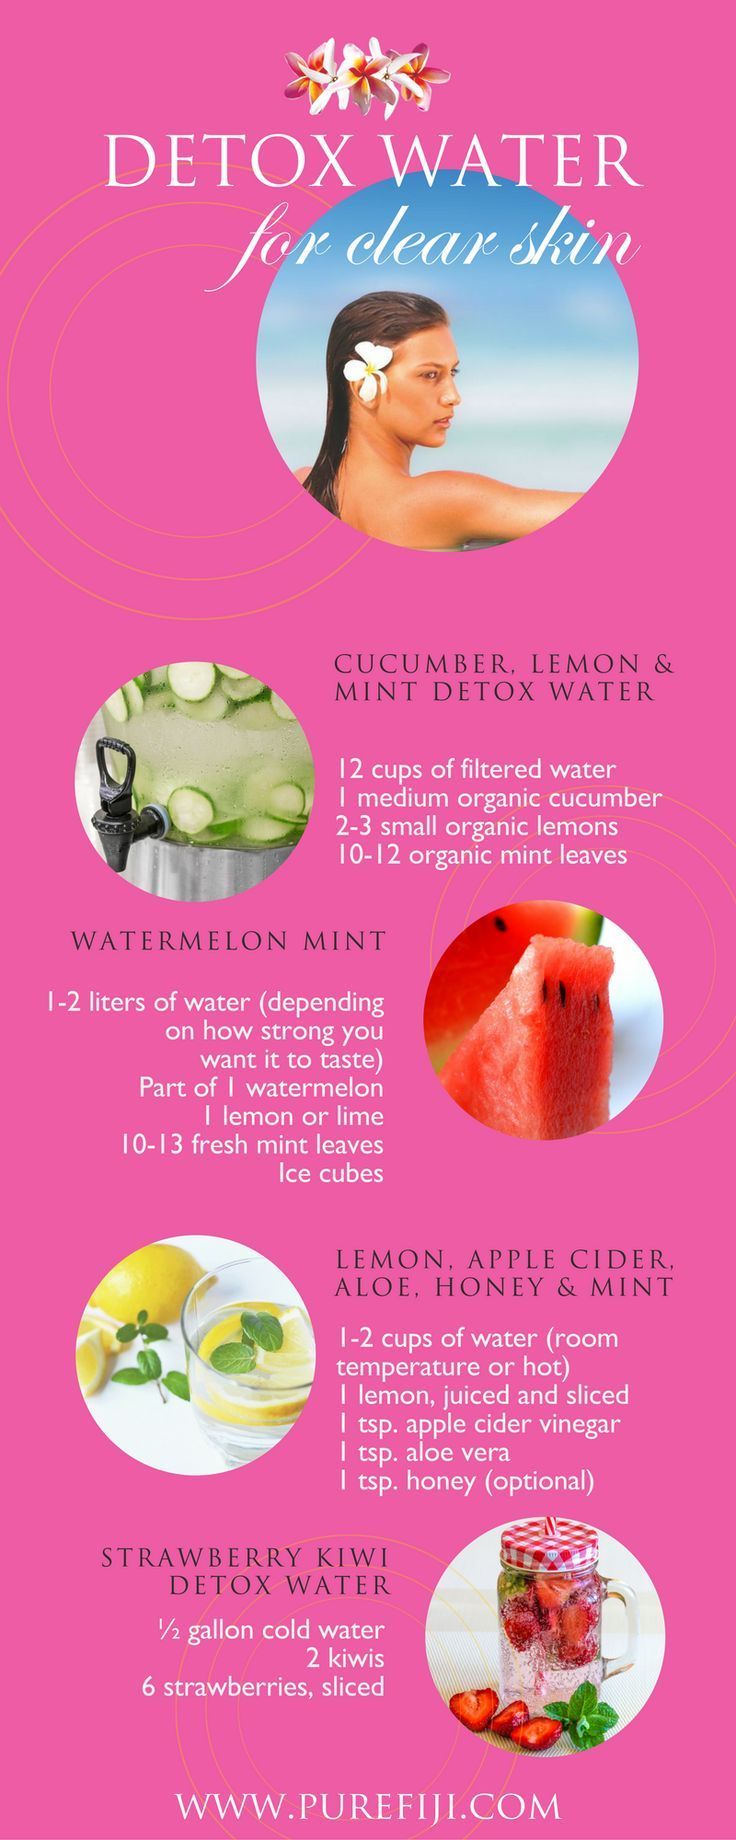 17 beauty Skin drink ideas